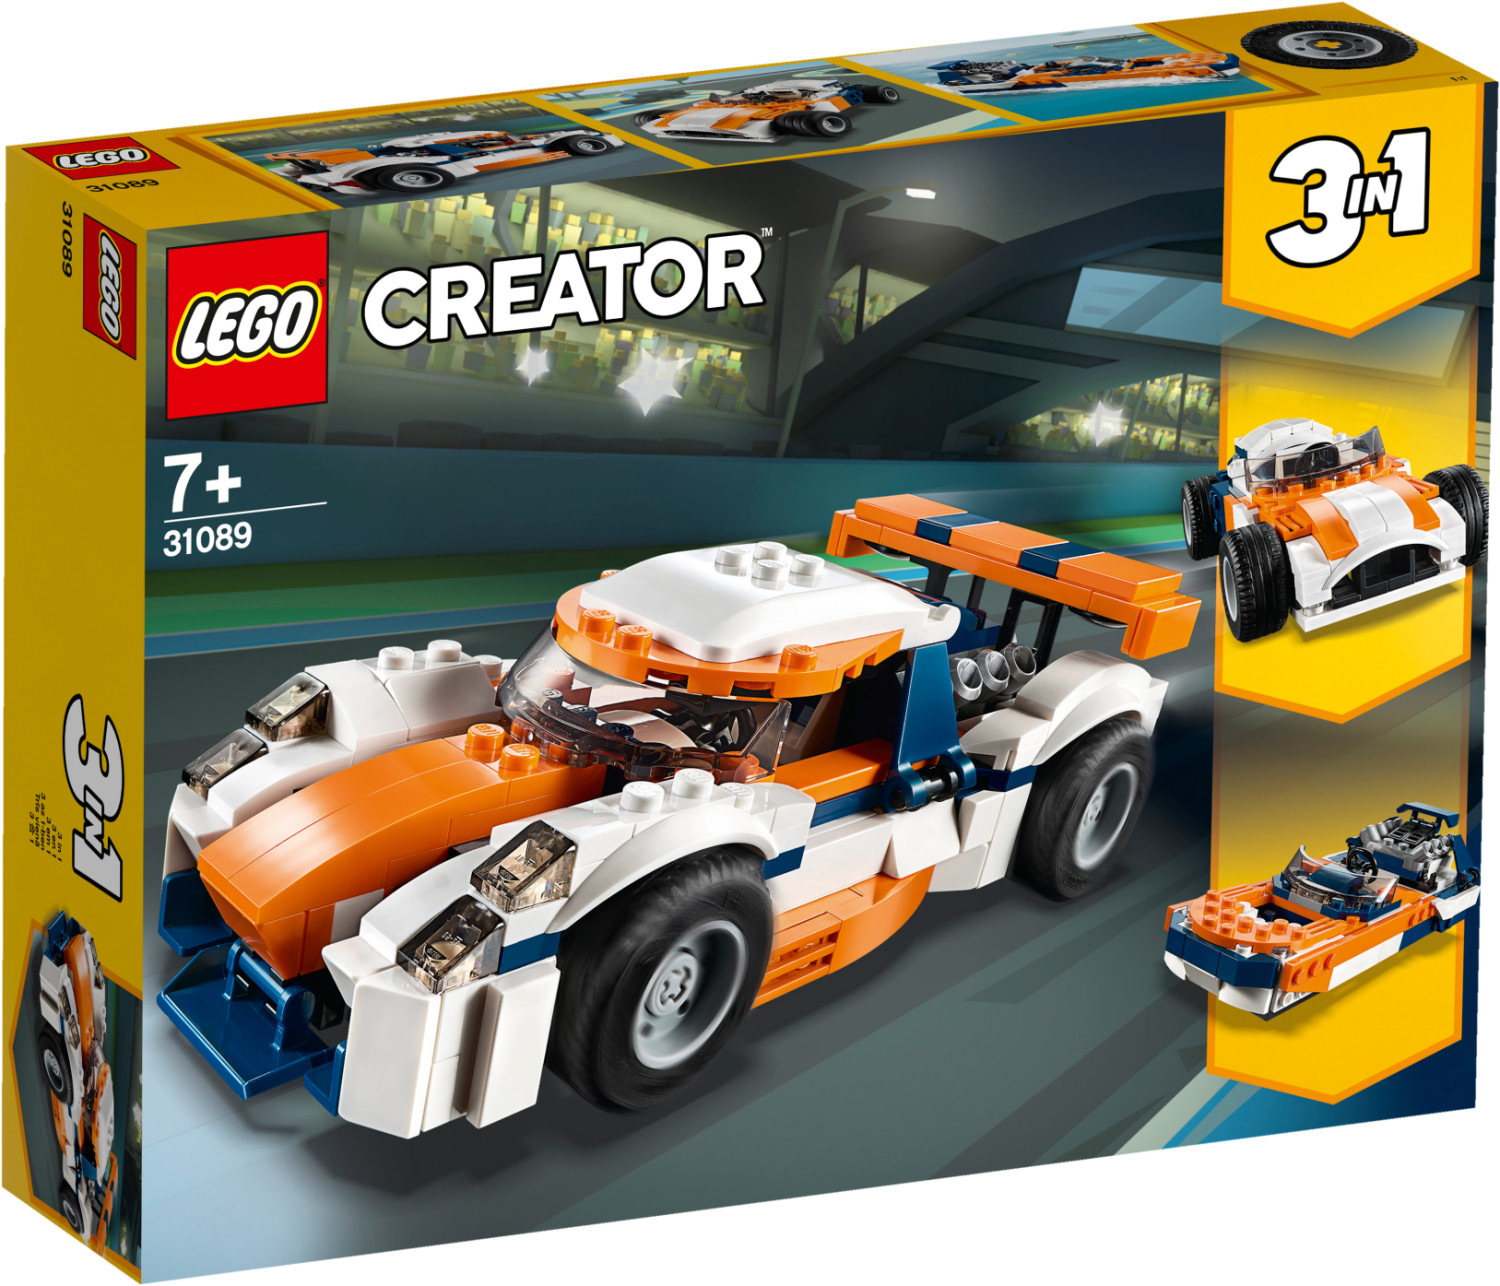 LEGO Creator 31046 pas cher, La voiture rapide